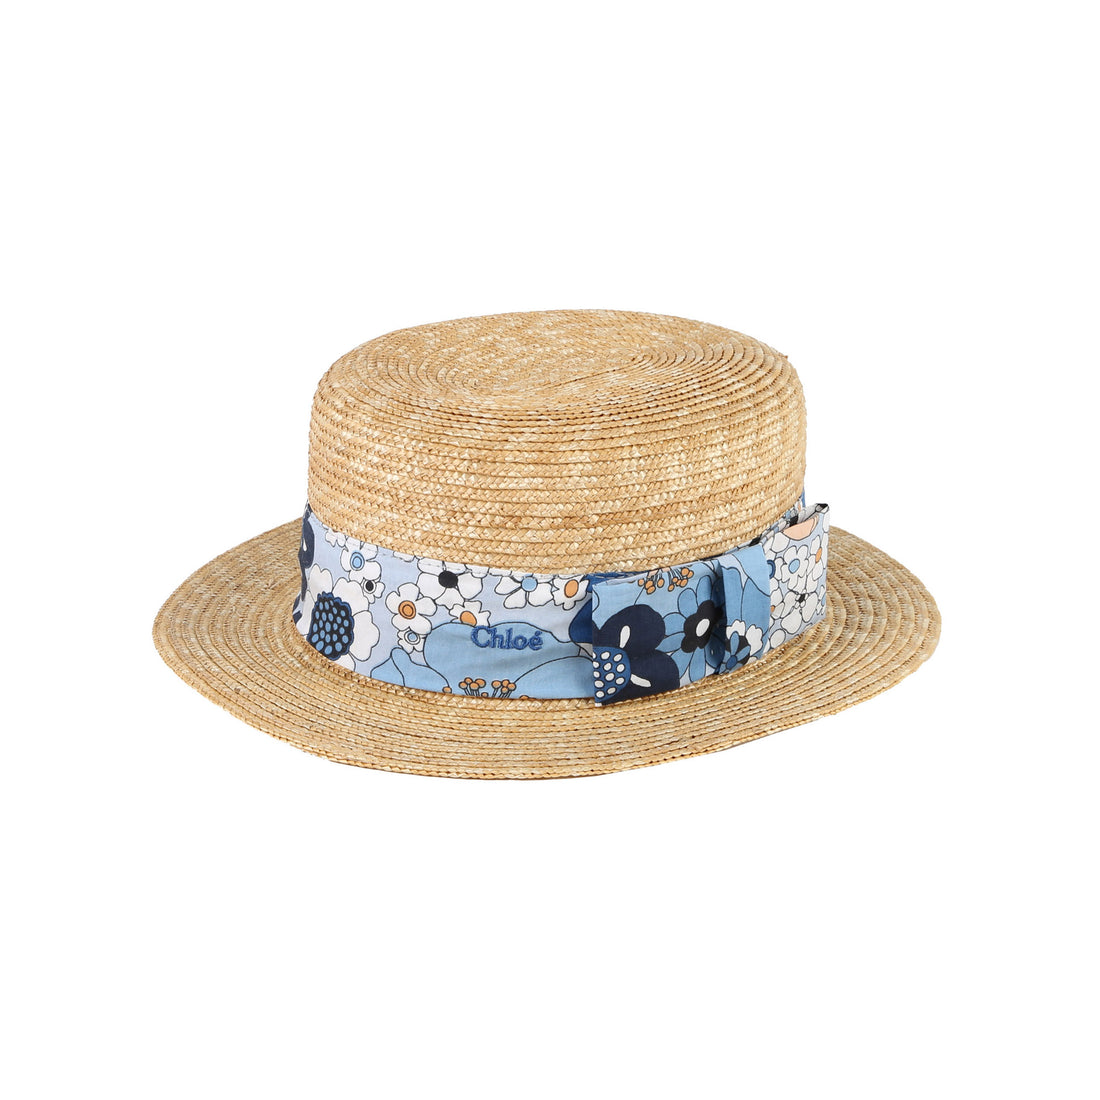 Chloe Marine Floral Straw Hat